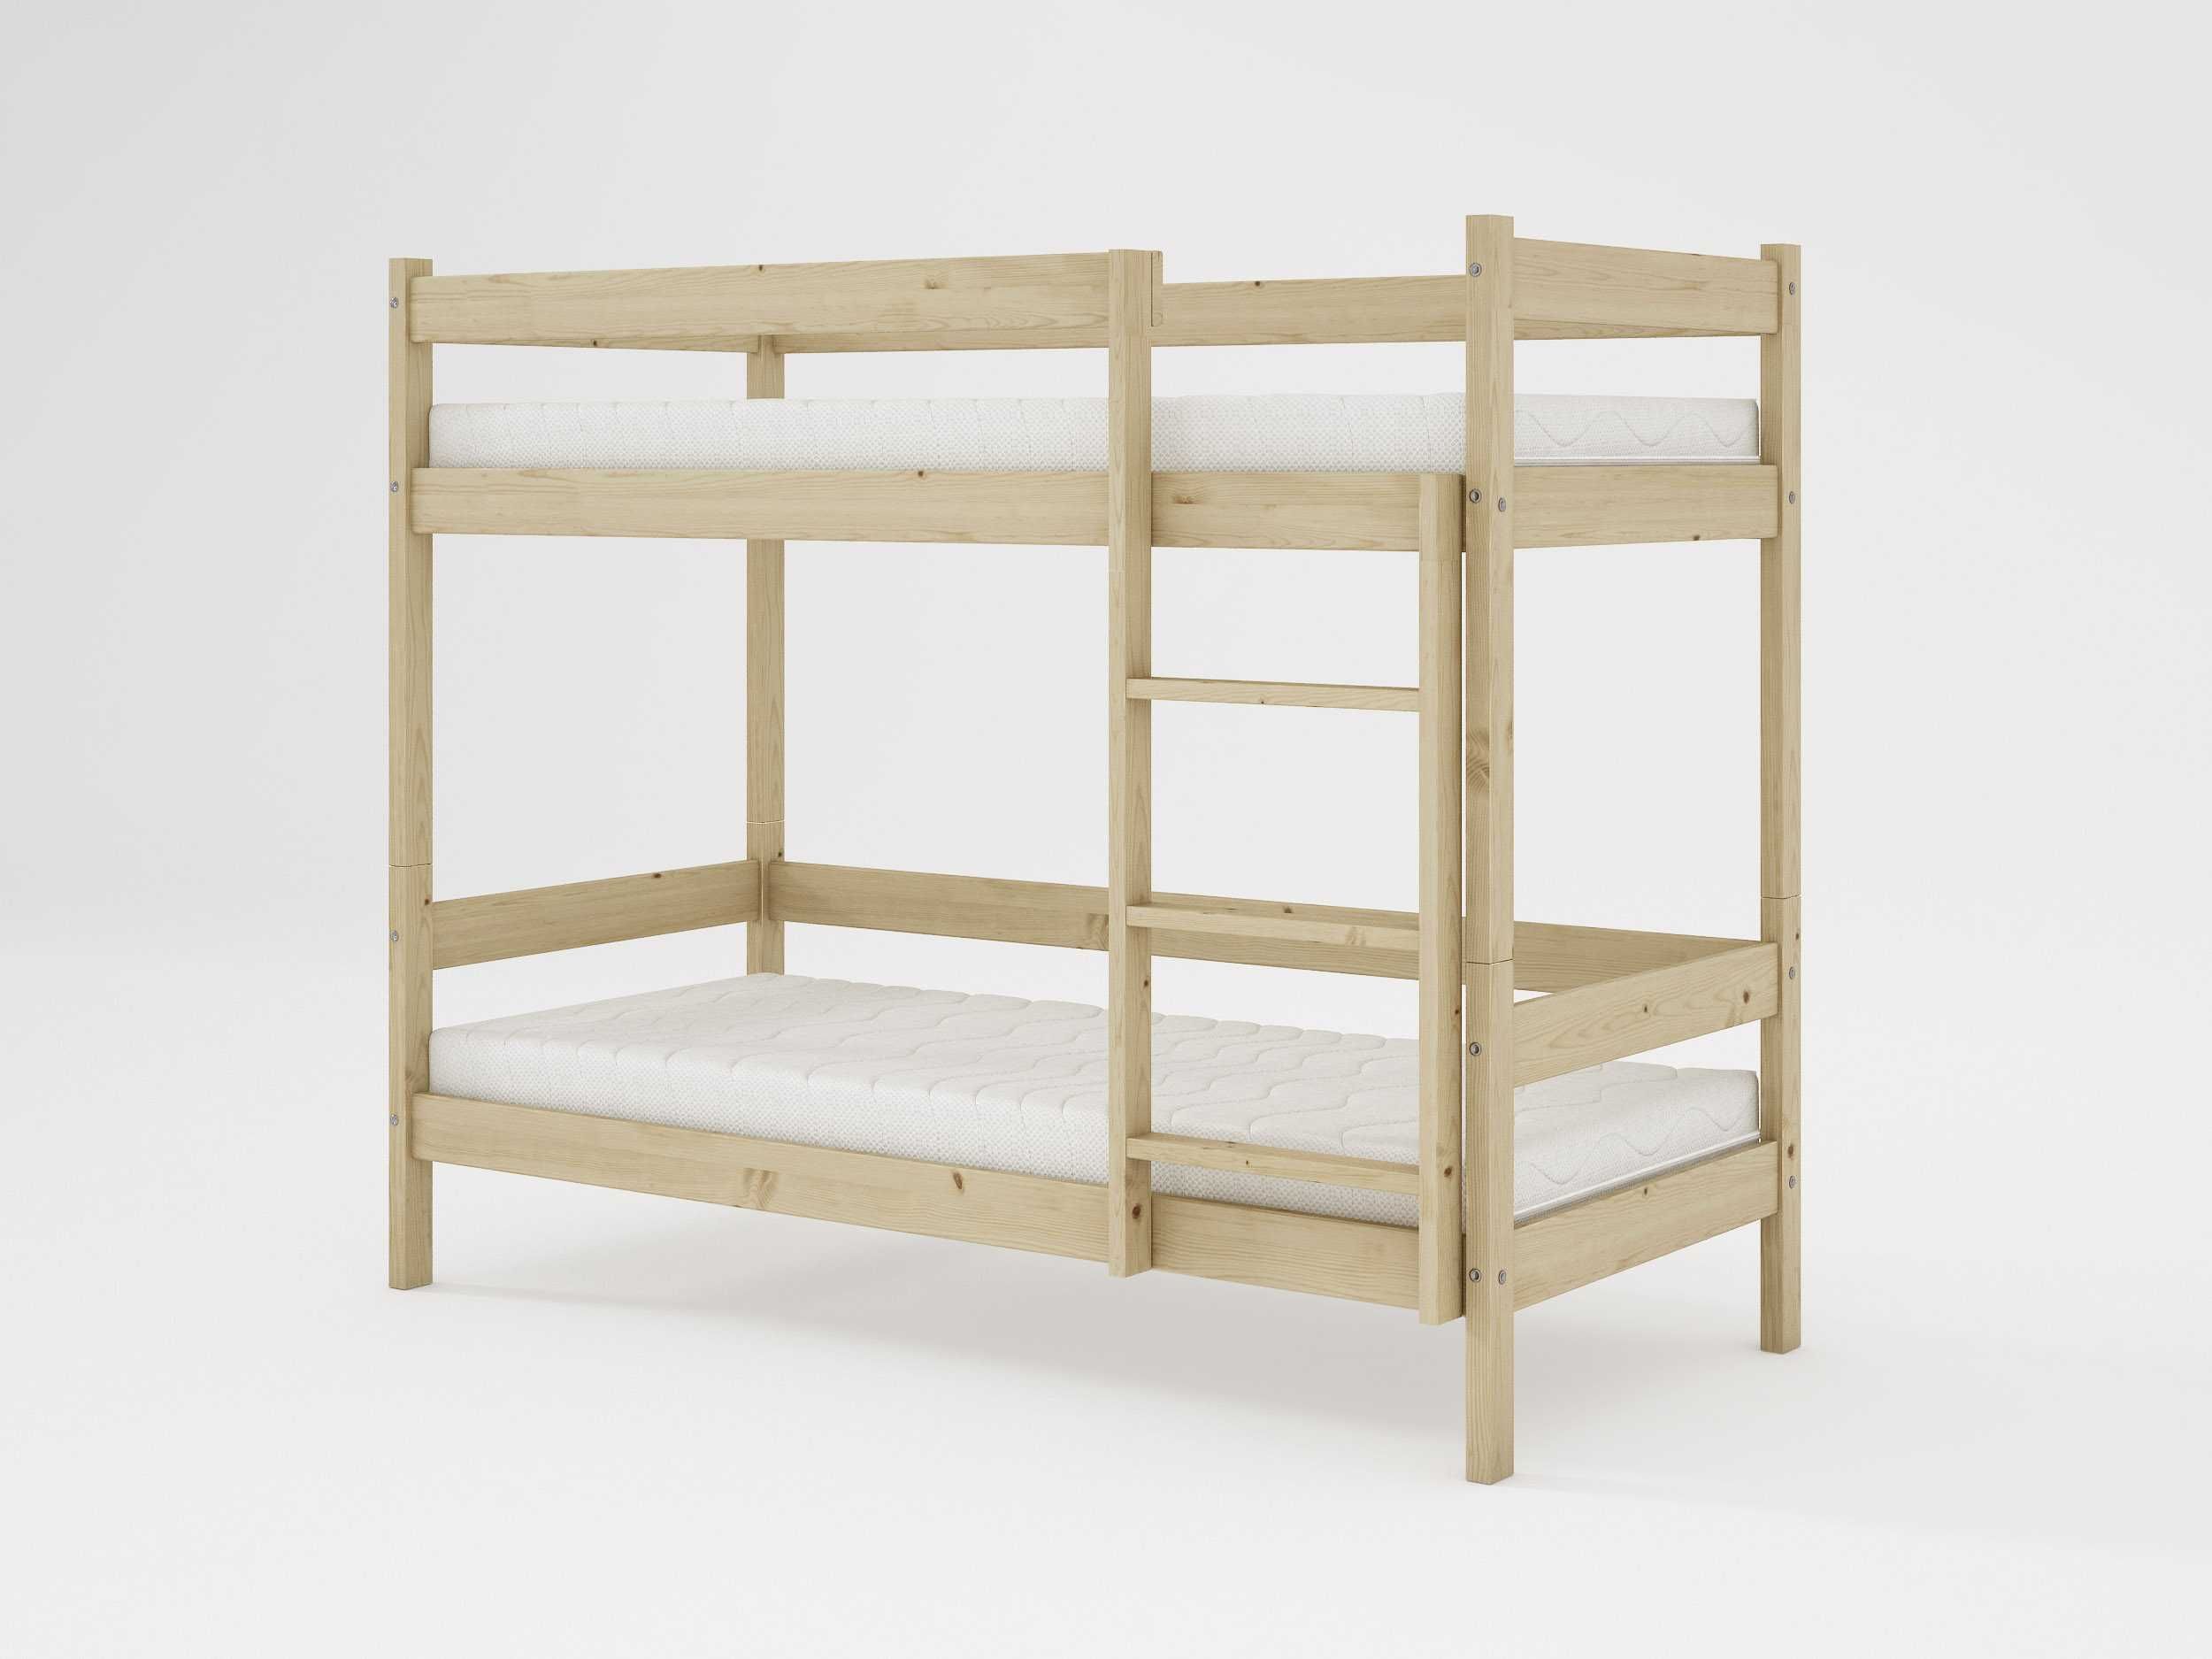 Łóżko PIĘTROWE HIT 90x200 Łóżka drewniane sosnowe producent grajapl